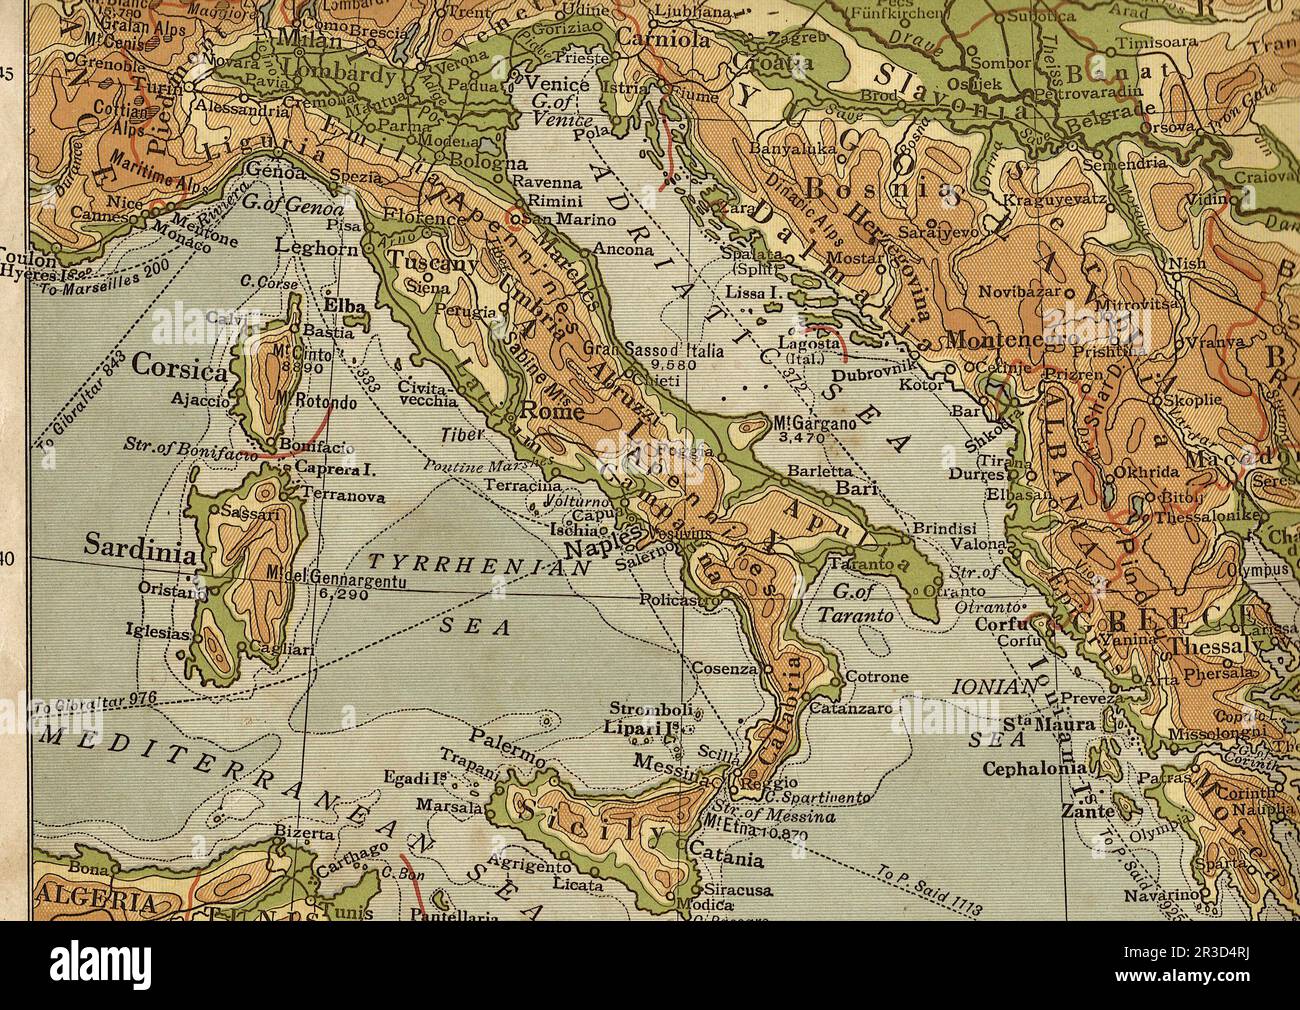 Carta geografica italia immagini e fotografie stock ad alta risoluzione -  Alamy